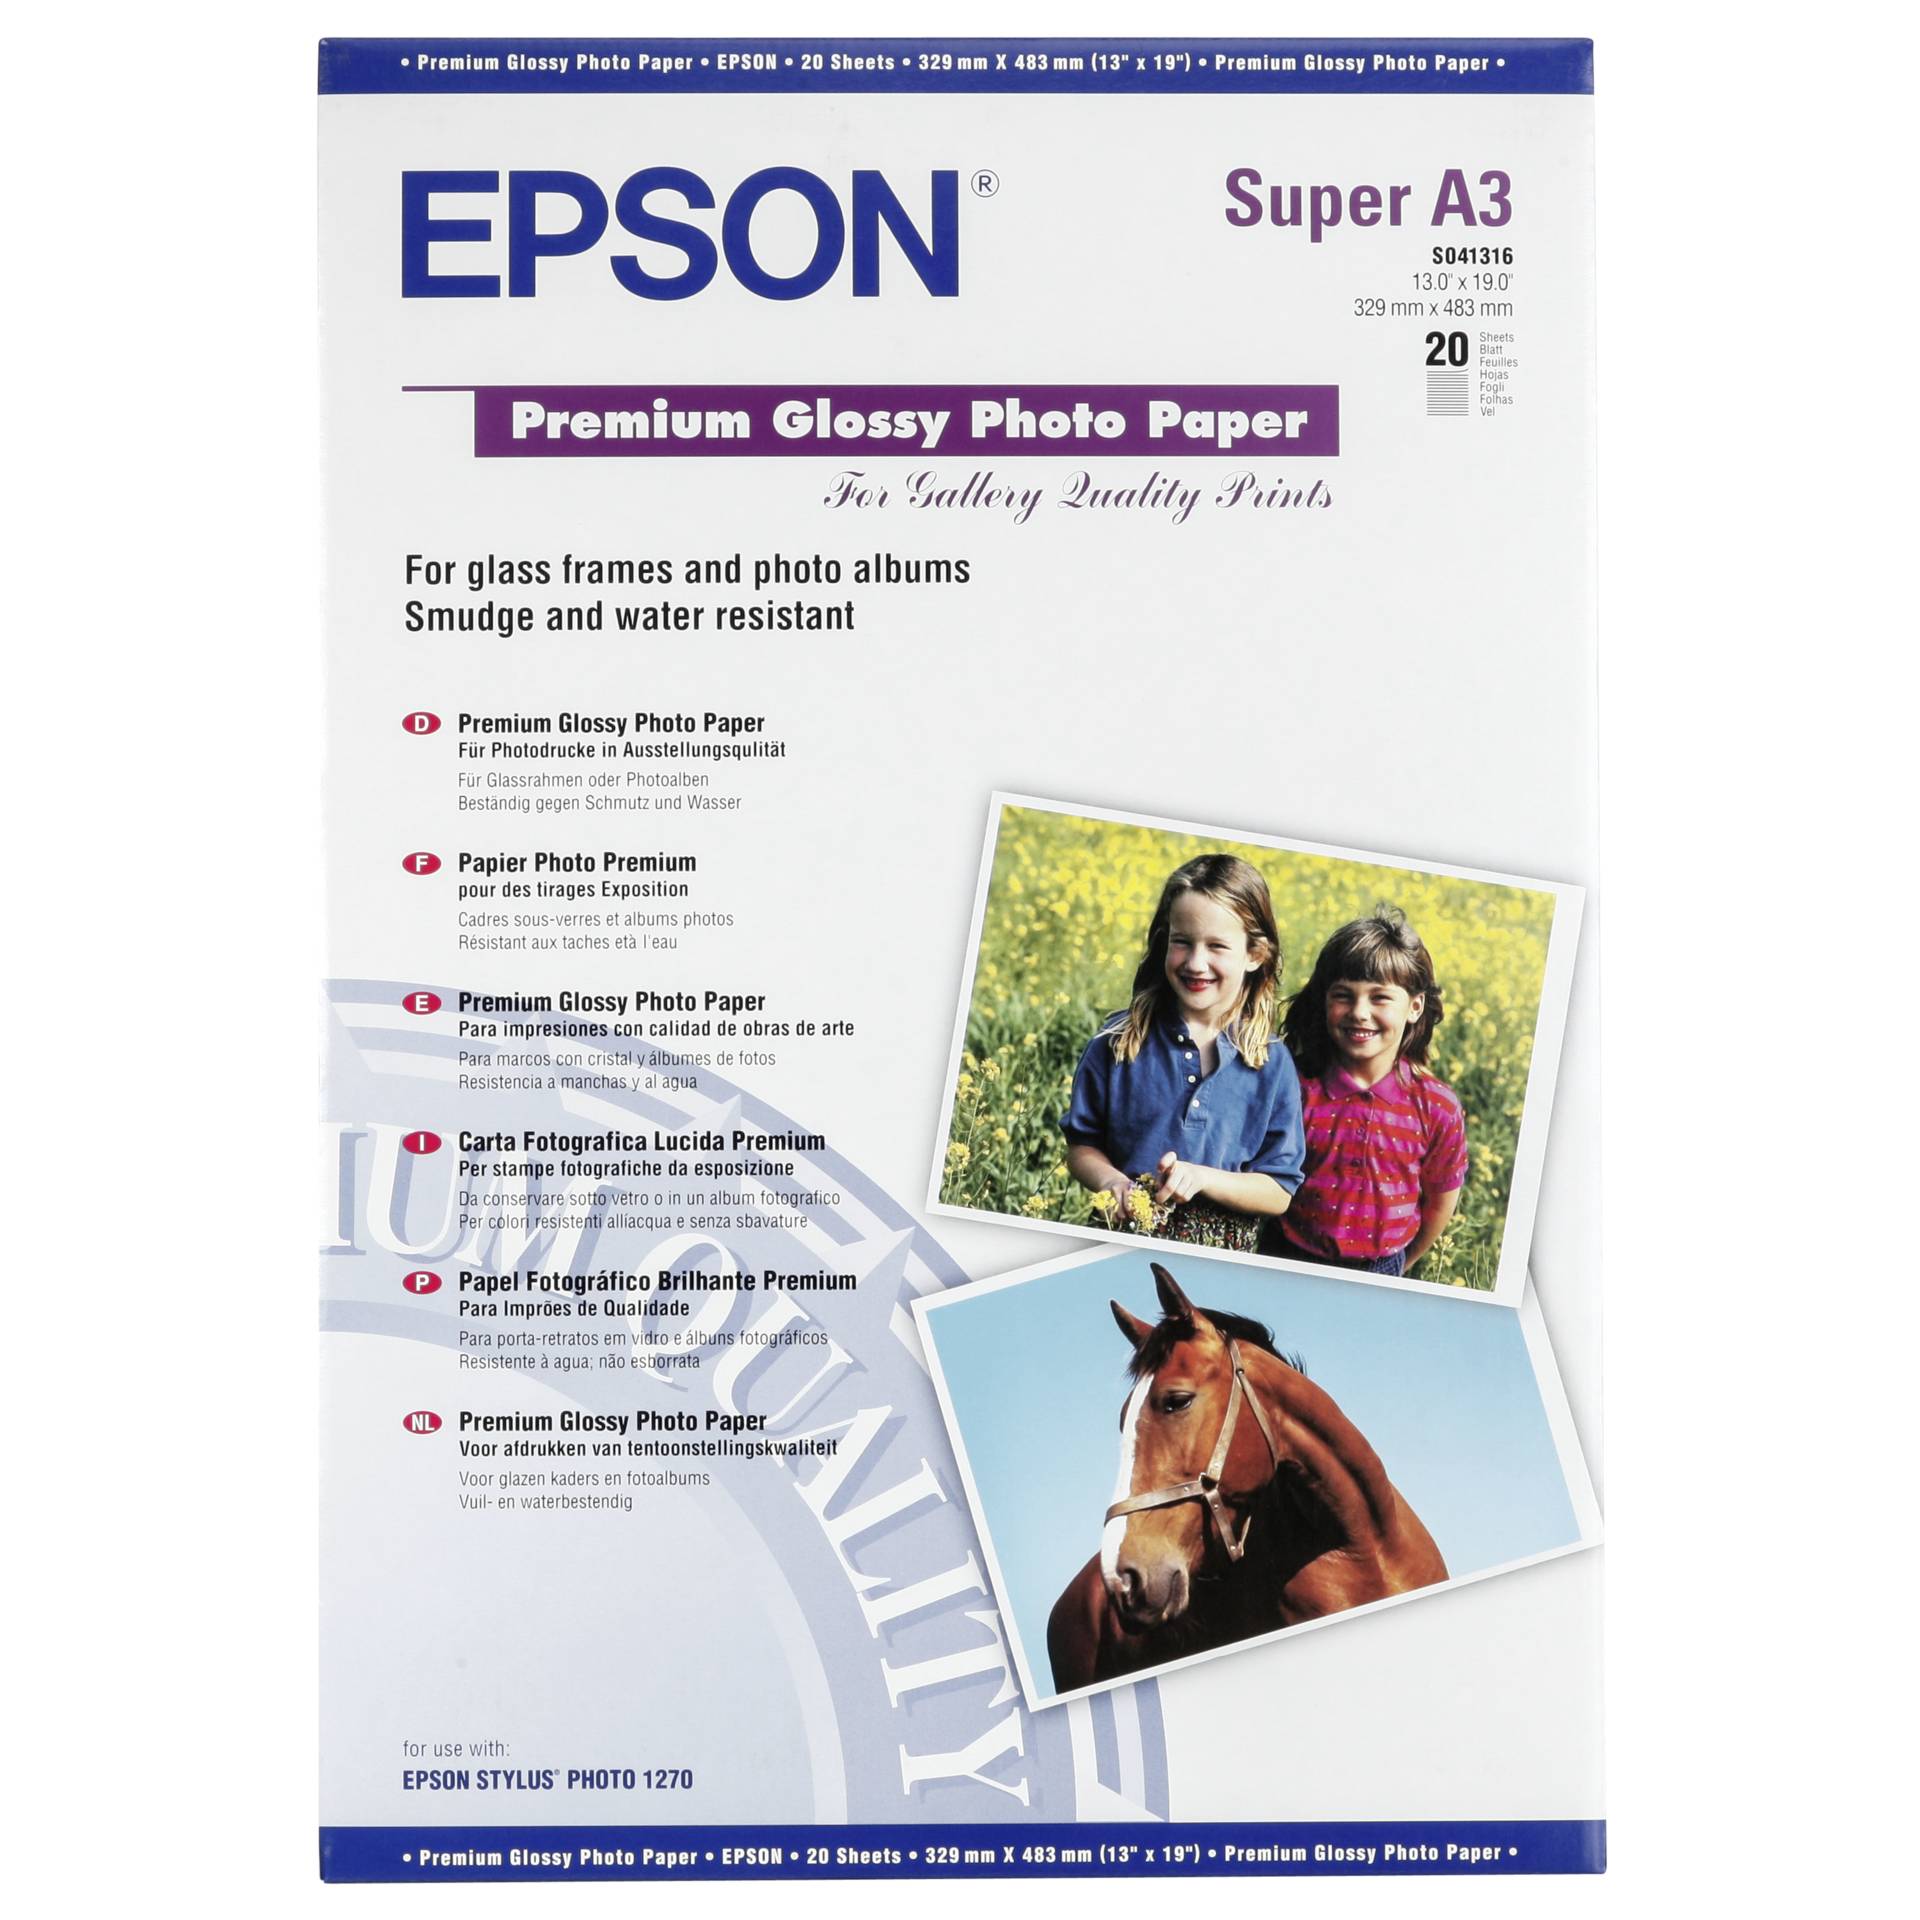 Epson Premium Glossy Photo Paper A 3+, 20 fogli, 255 g   S 0